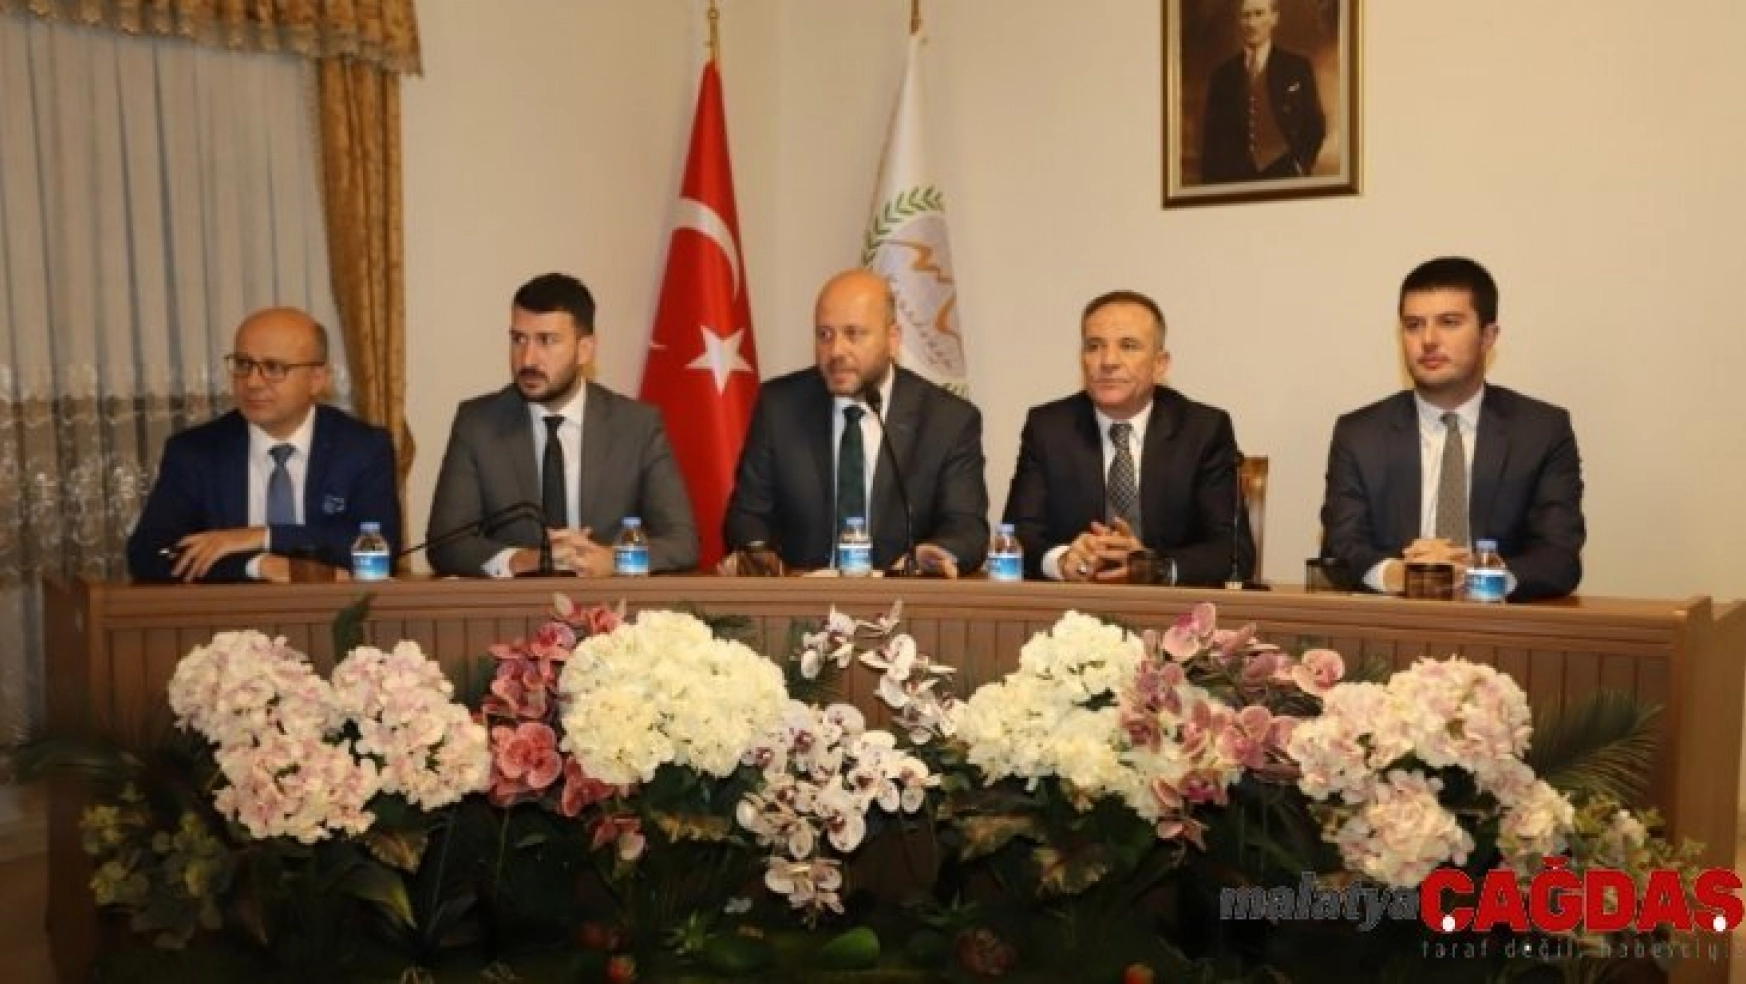 Nevşehir Belediye Meclisi yılın ilk toplantısını yaptı